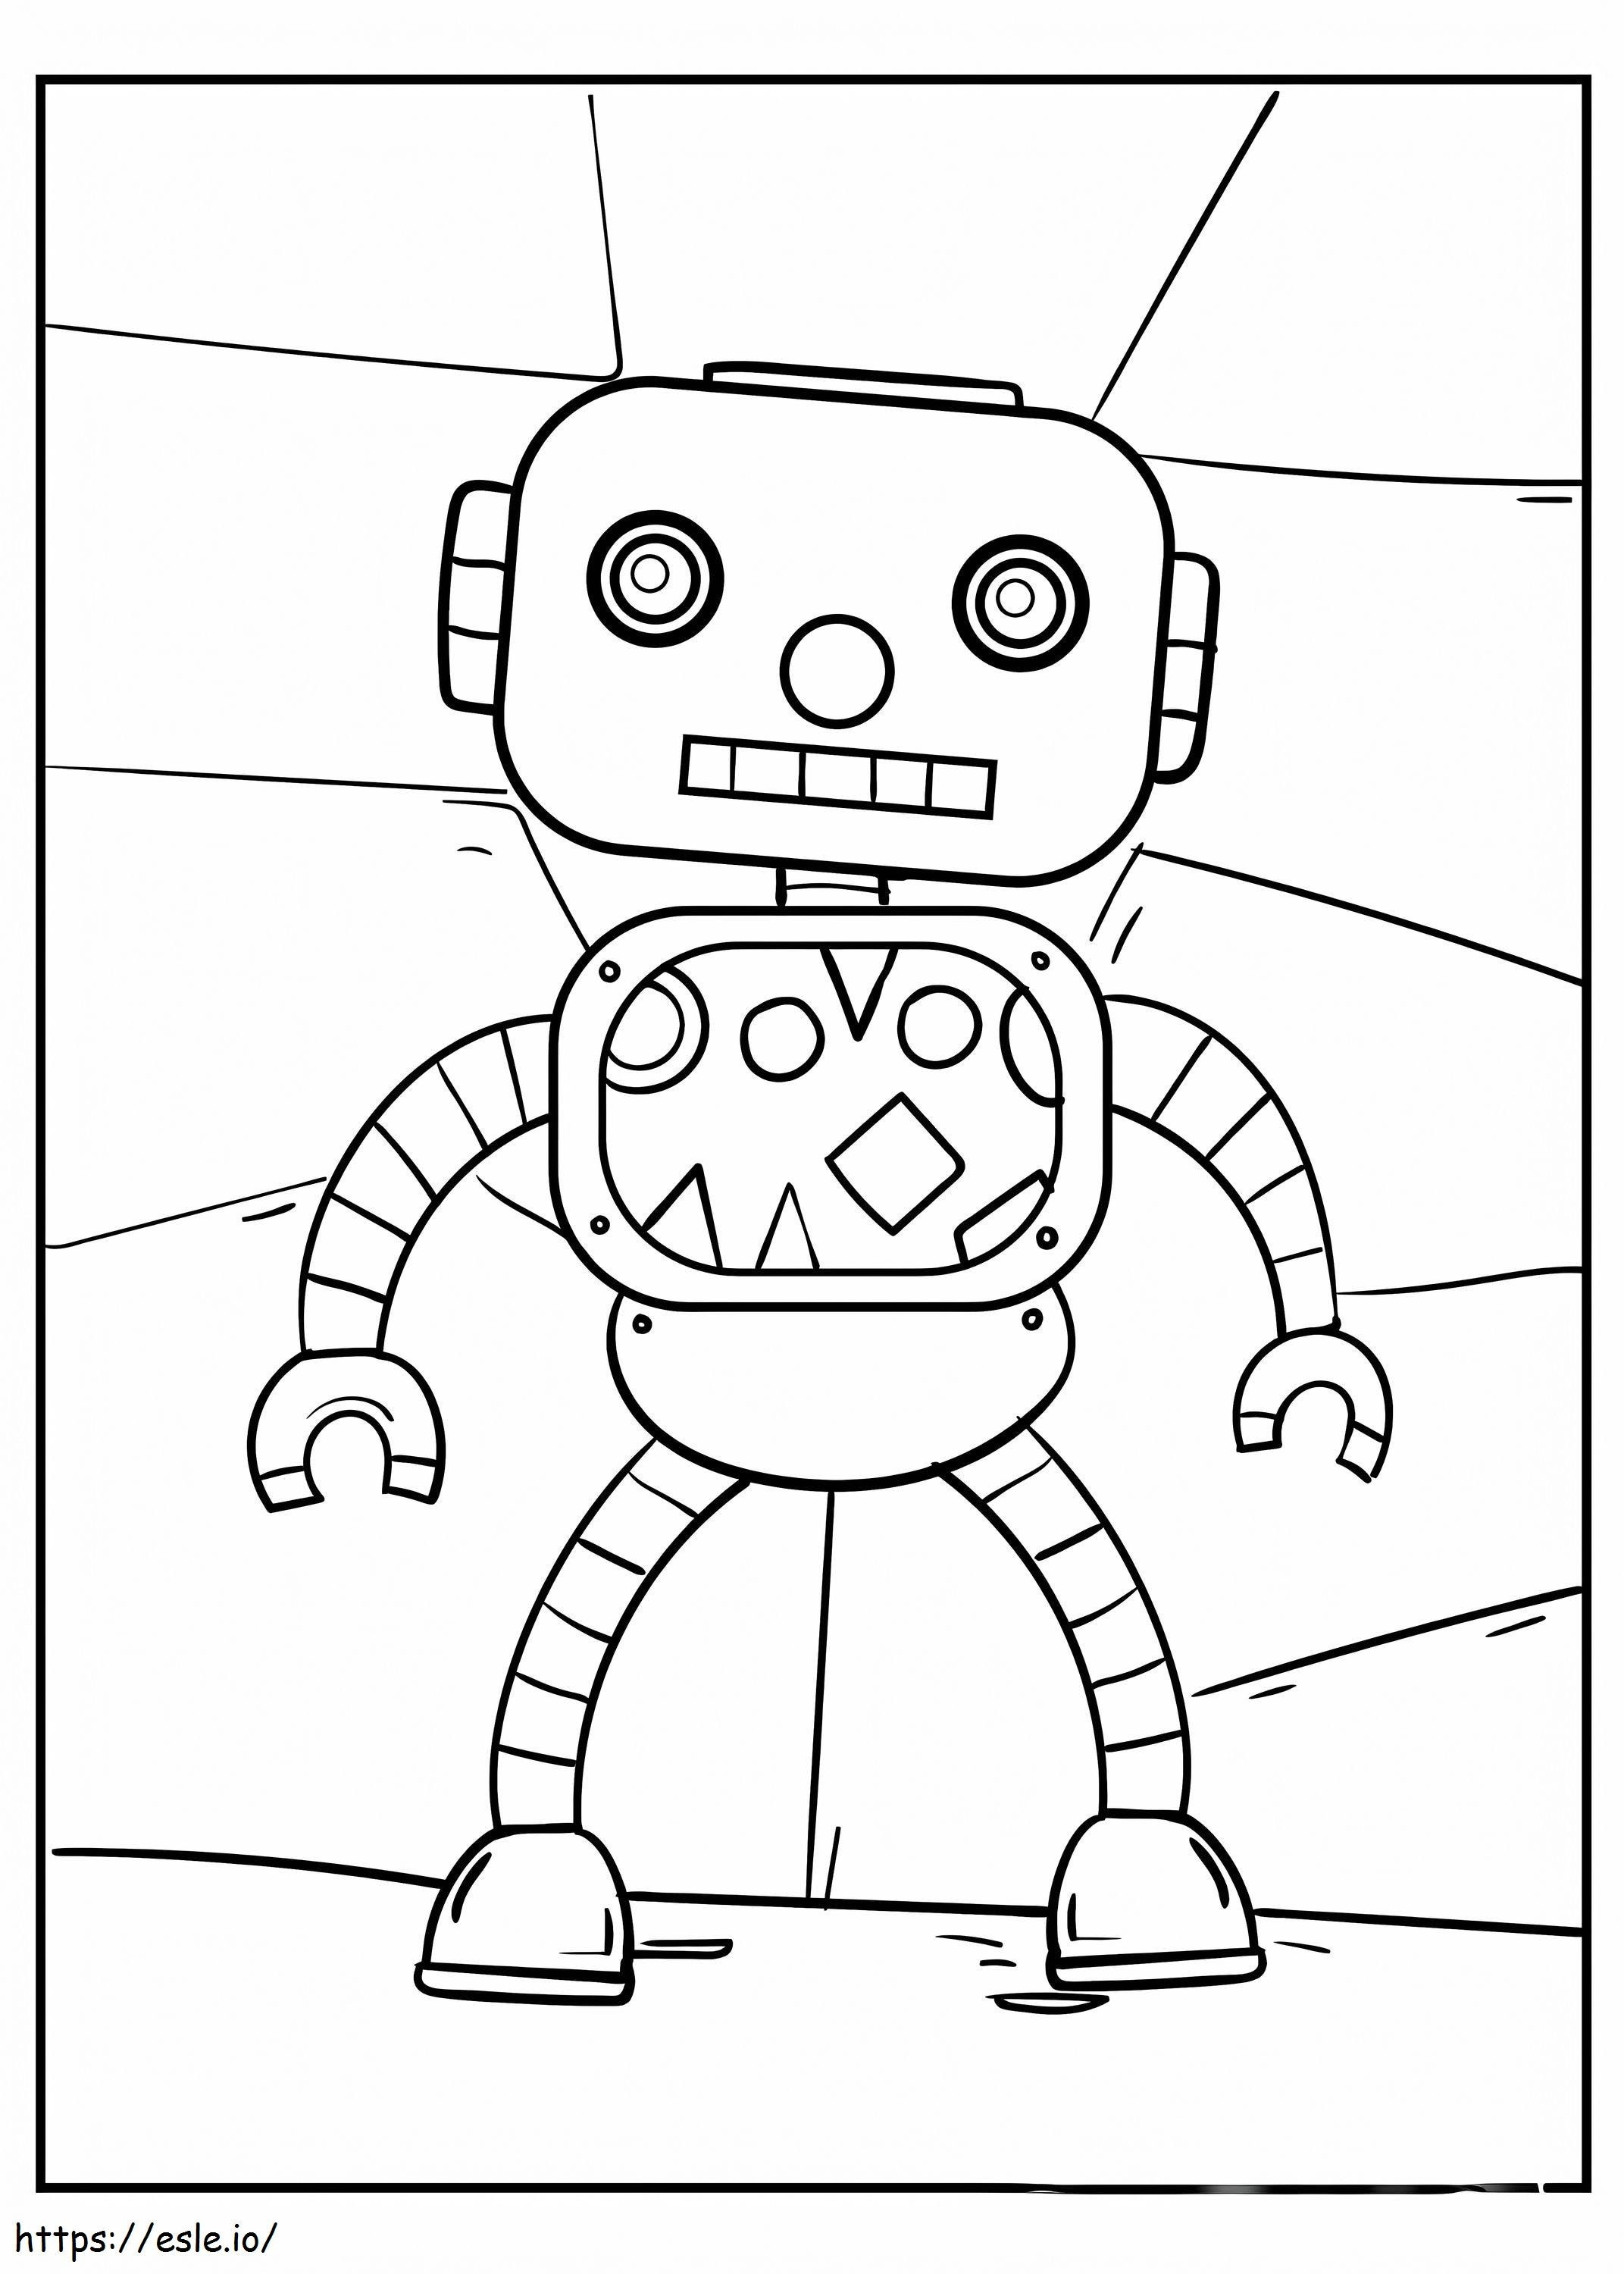 Criança Robô para colorir